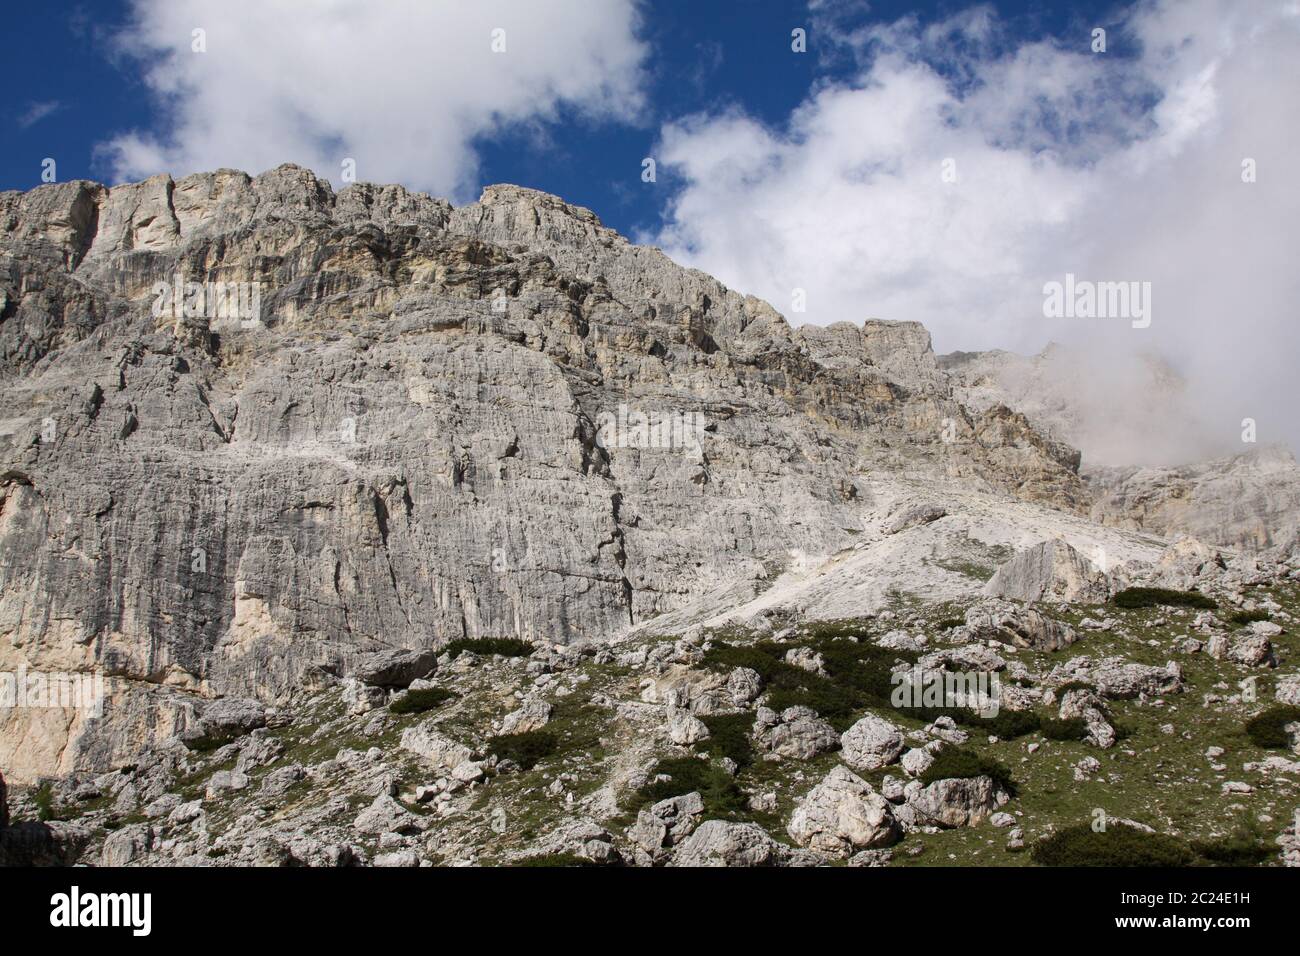 Mur de montagne escarpé dans les Alpes s'avance verticalement dans l'air Banque D'Images